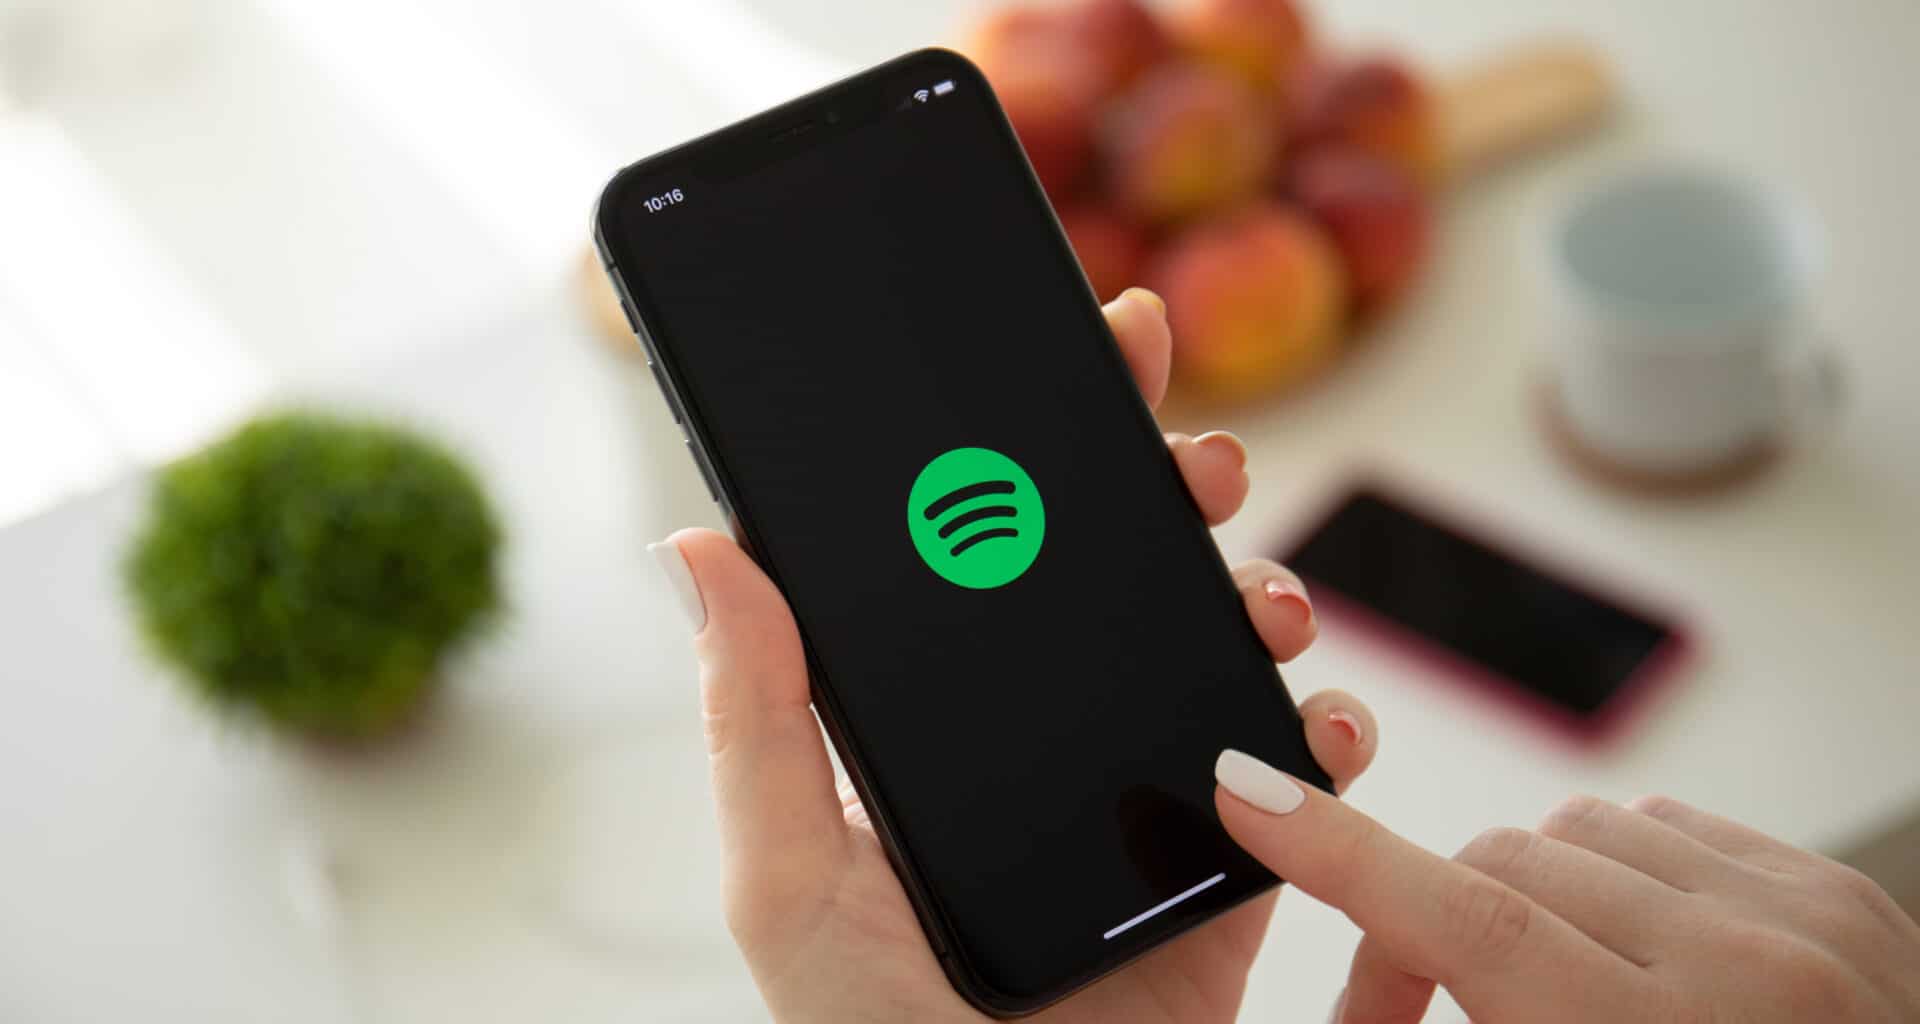 Ícone/logo do Spotify em um iPhone